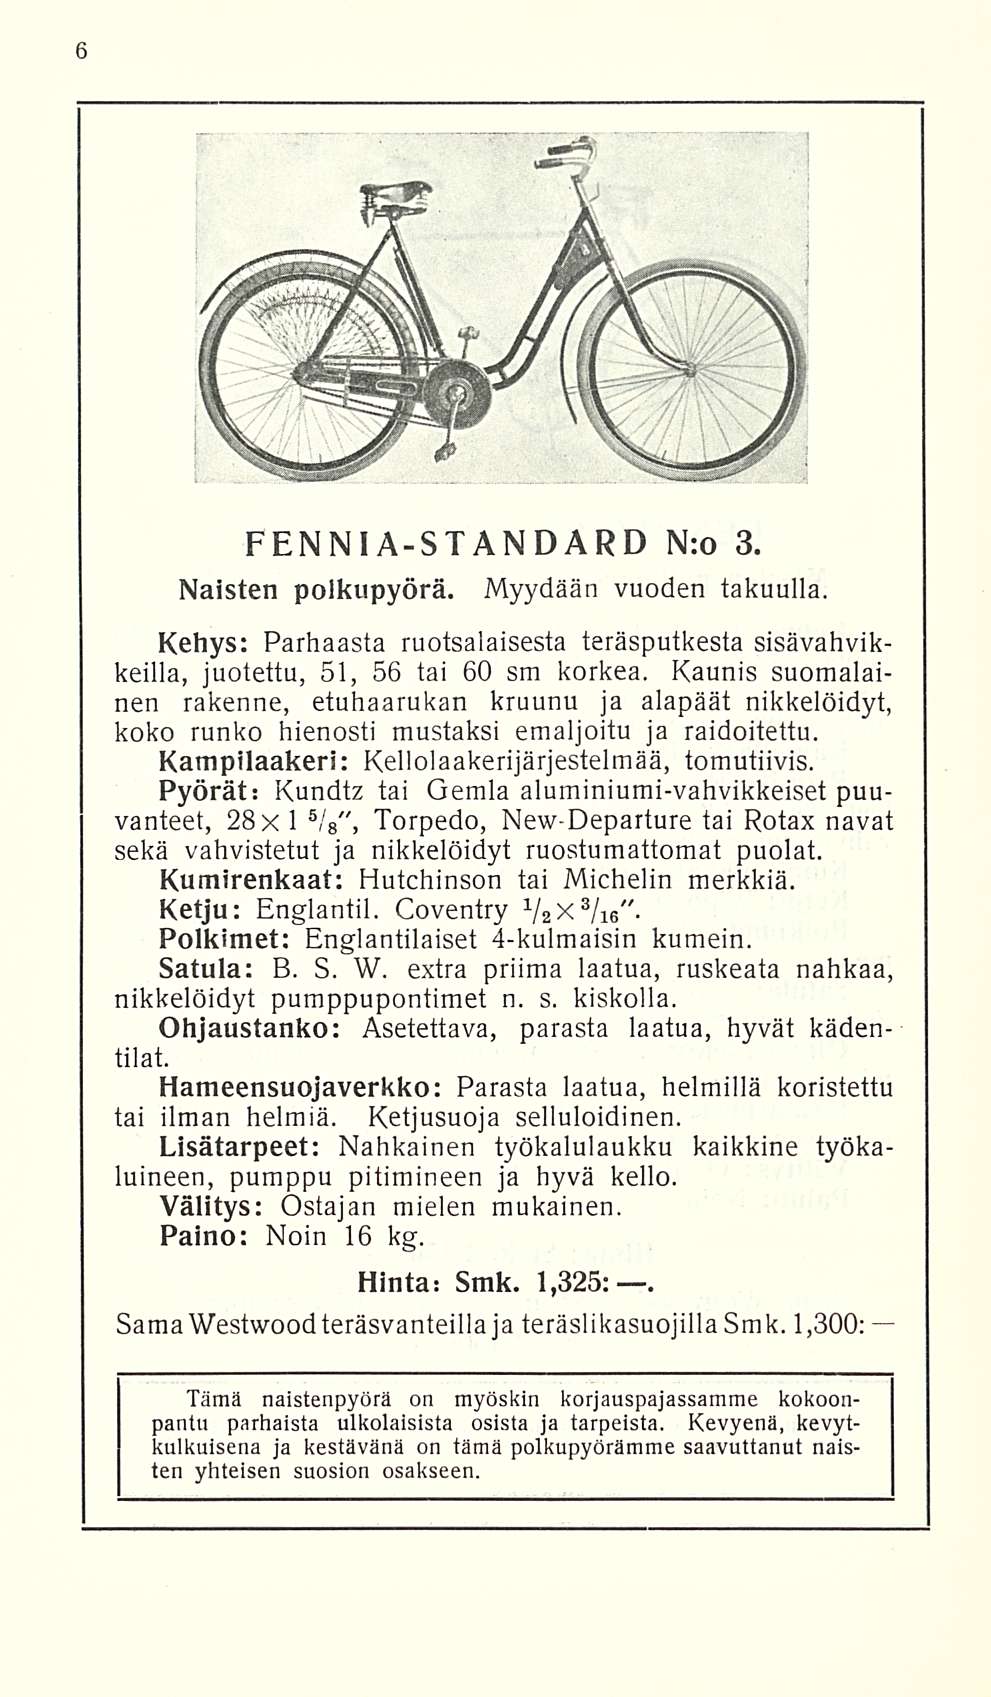 FENNIA-STANDARD N:o 3. Naisten polkupyörä. Myydään vuoden takuulla. Kehys: Parhaasta ruotsalaisesta teräsputkesta sisävahvikkeilla, juotettu, 51, 56 tai 60 sm korkea.